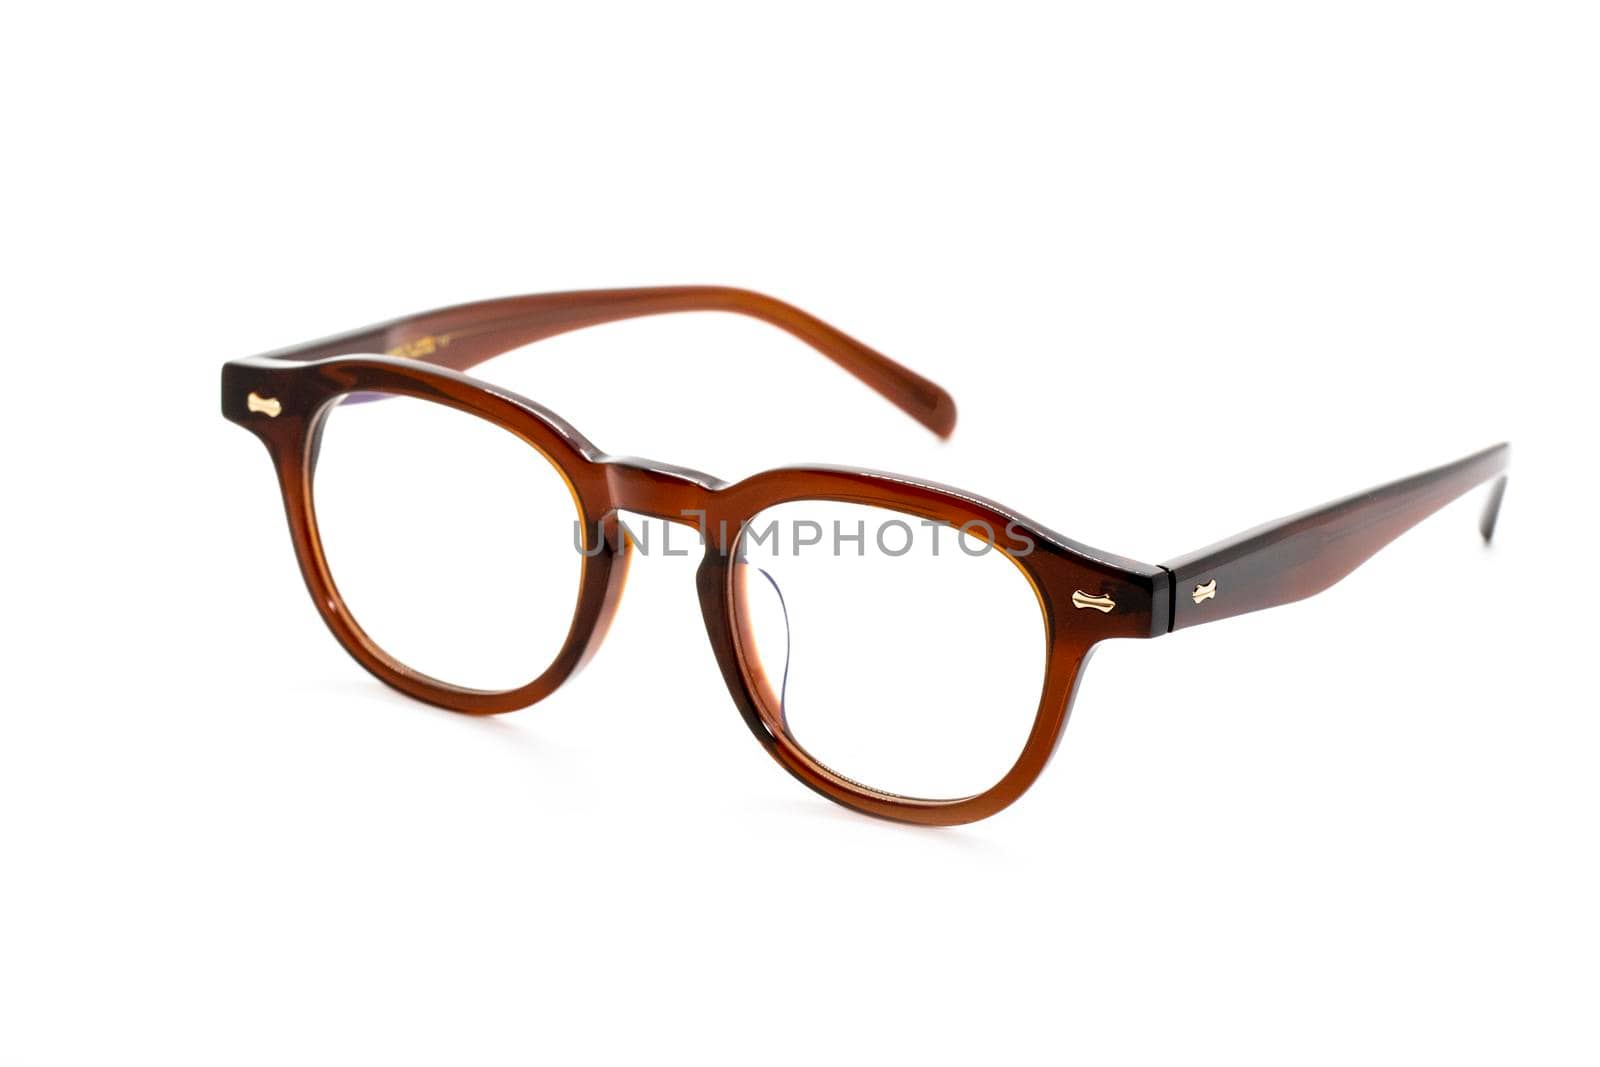 Image of modern fashionable spectacles isolated on white background, Eyewear, Glasses.